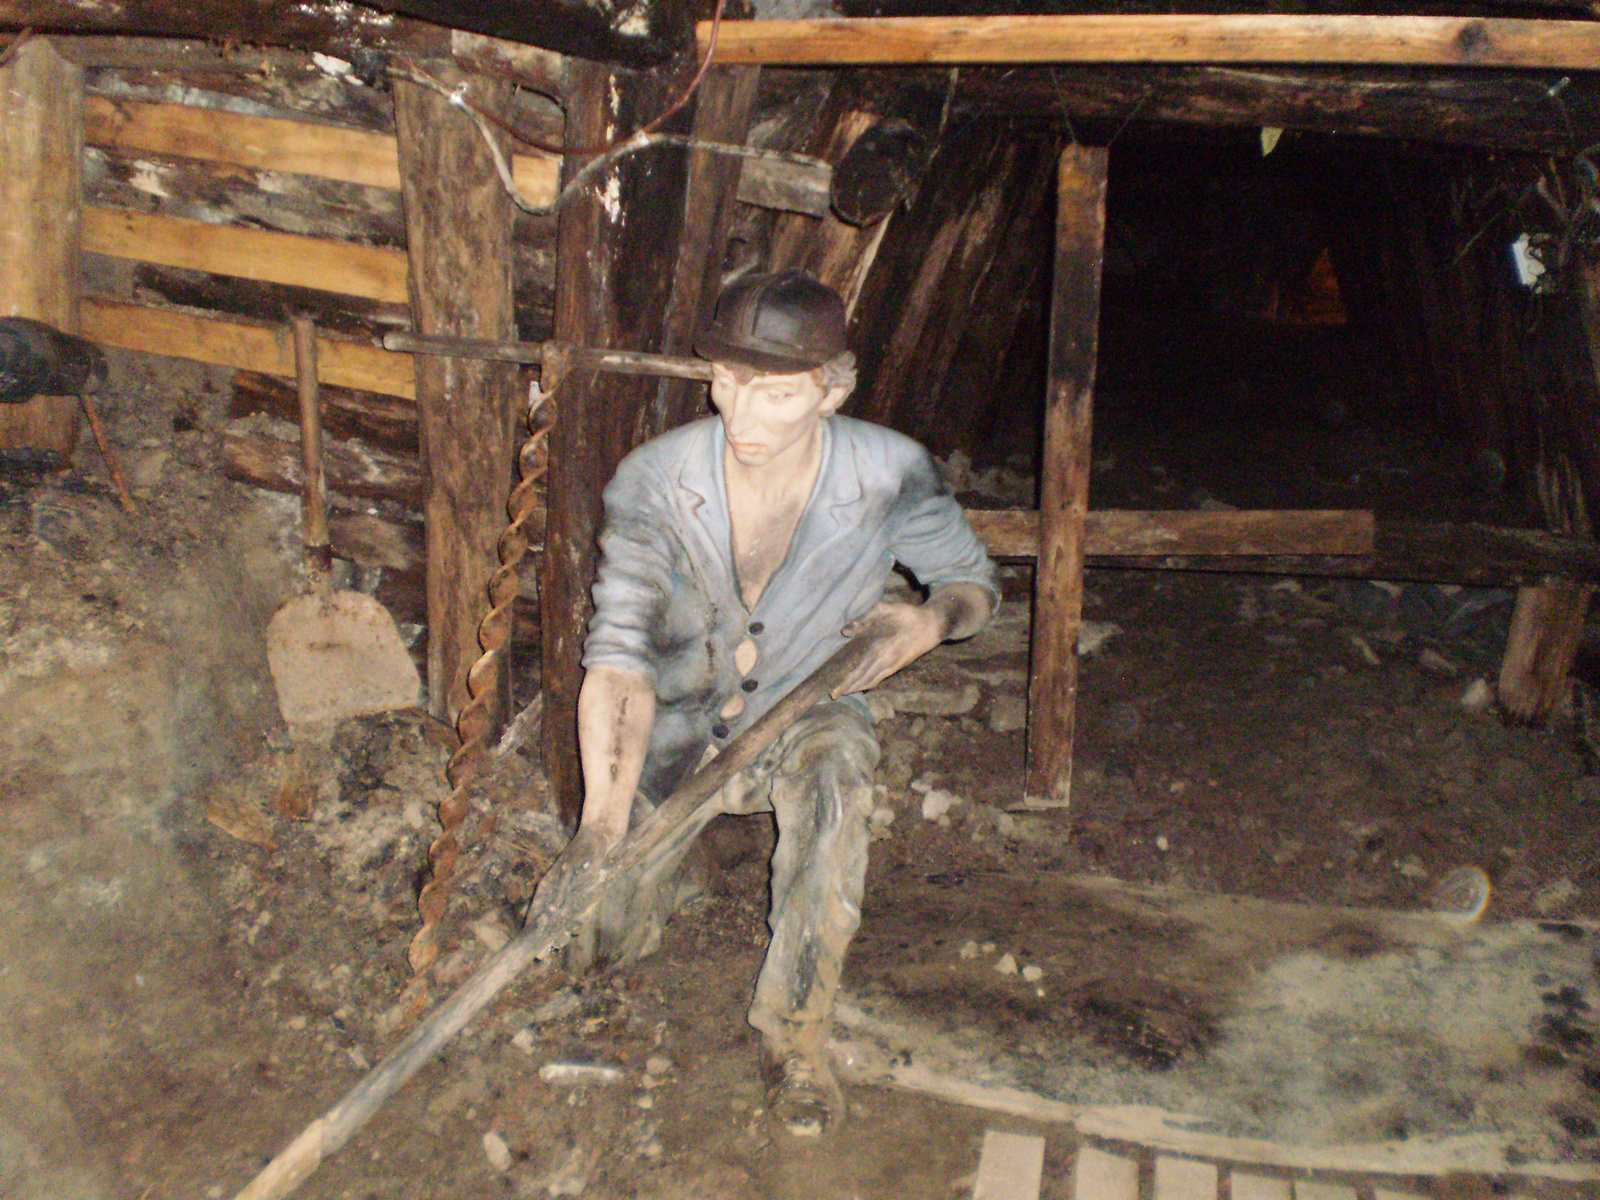 41: a törmeléket lapátoló bányász